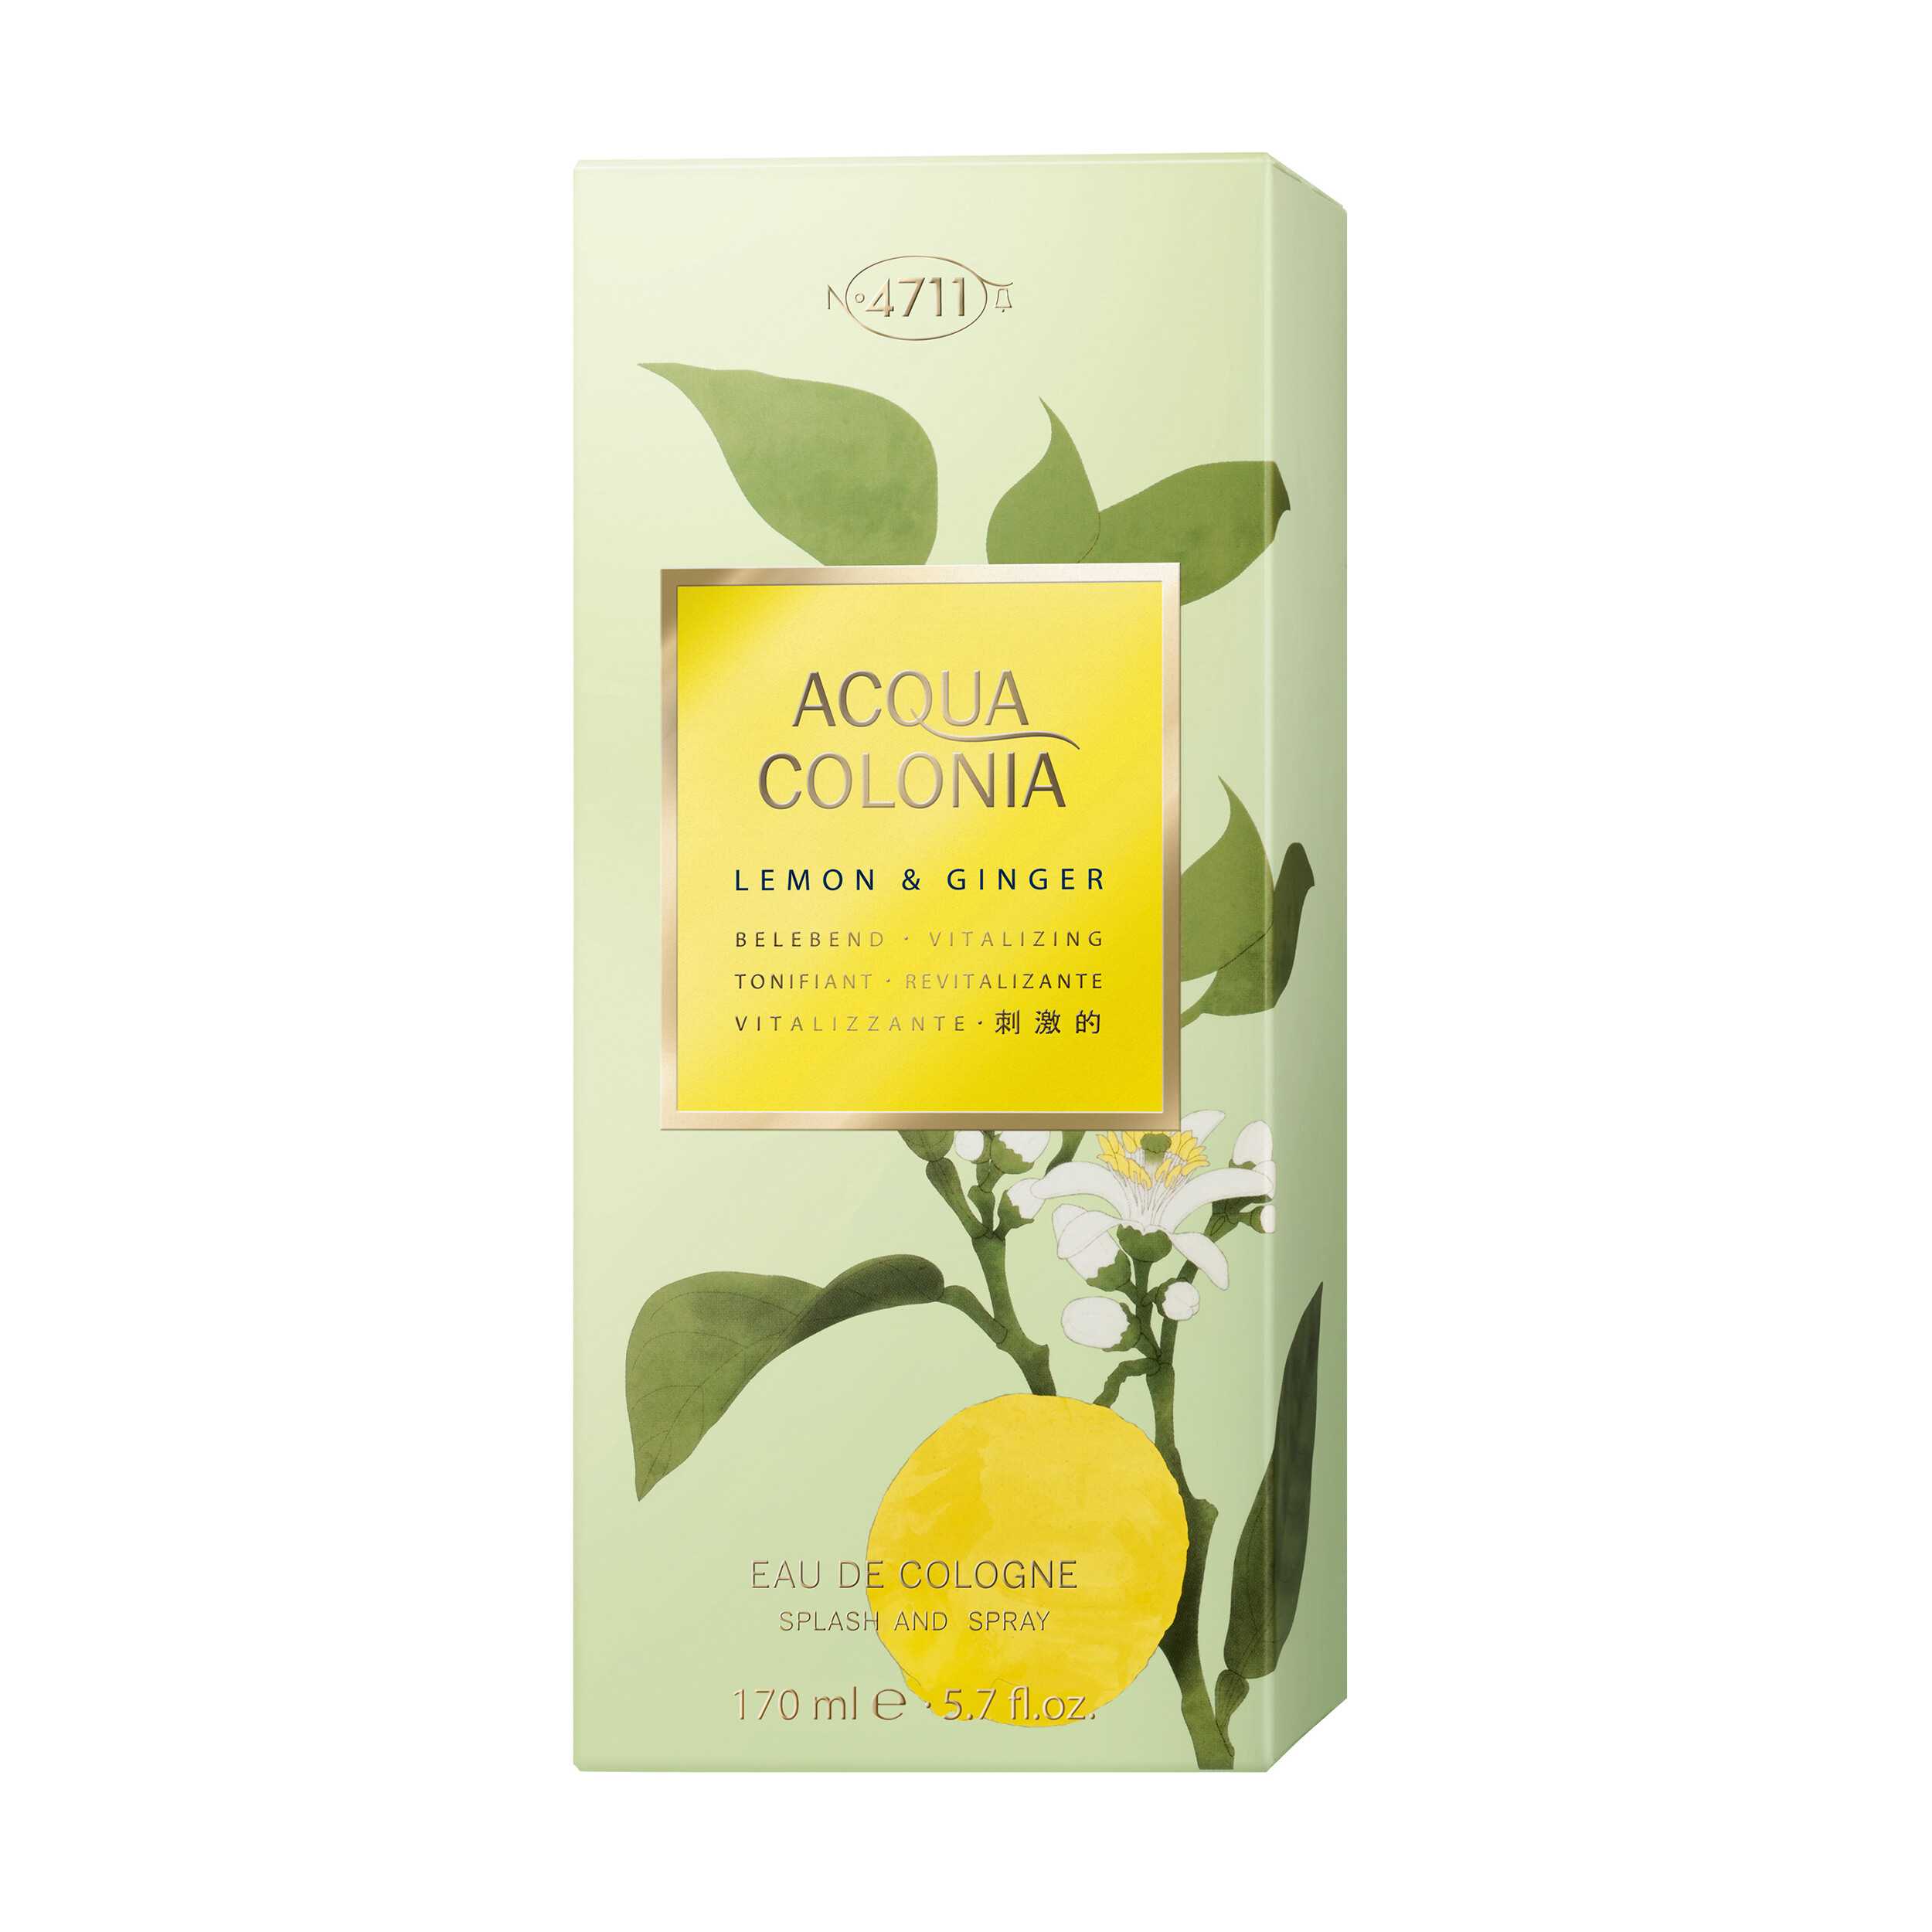 Parfum 4711 Acqua Colonia Lemon und Ginger kaufen